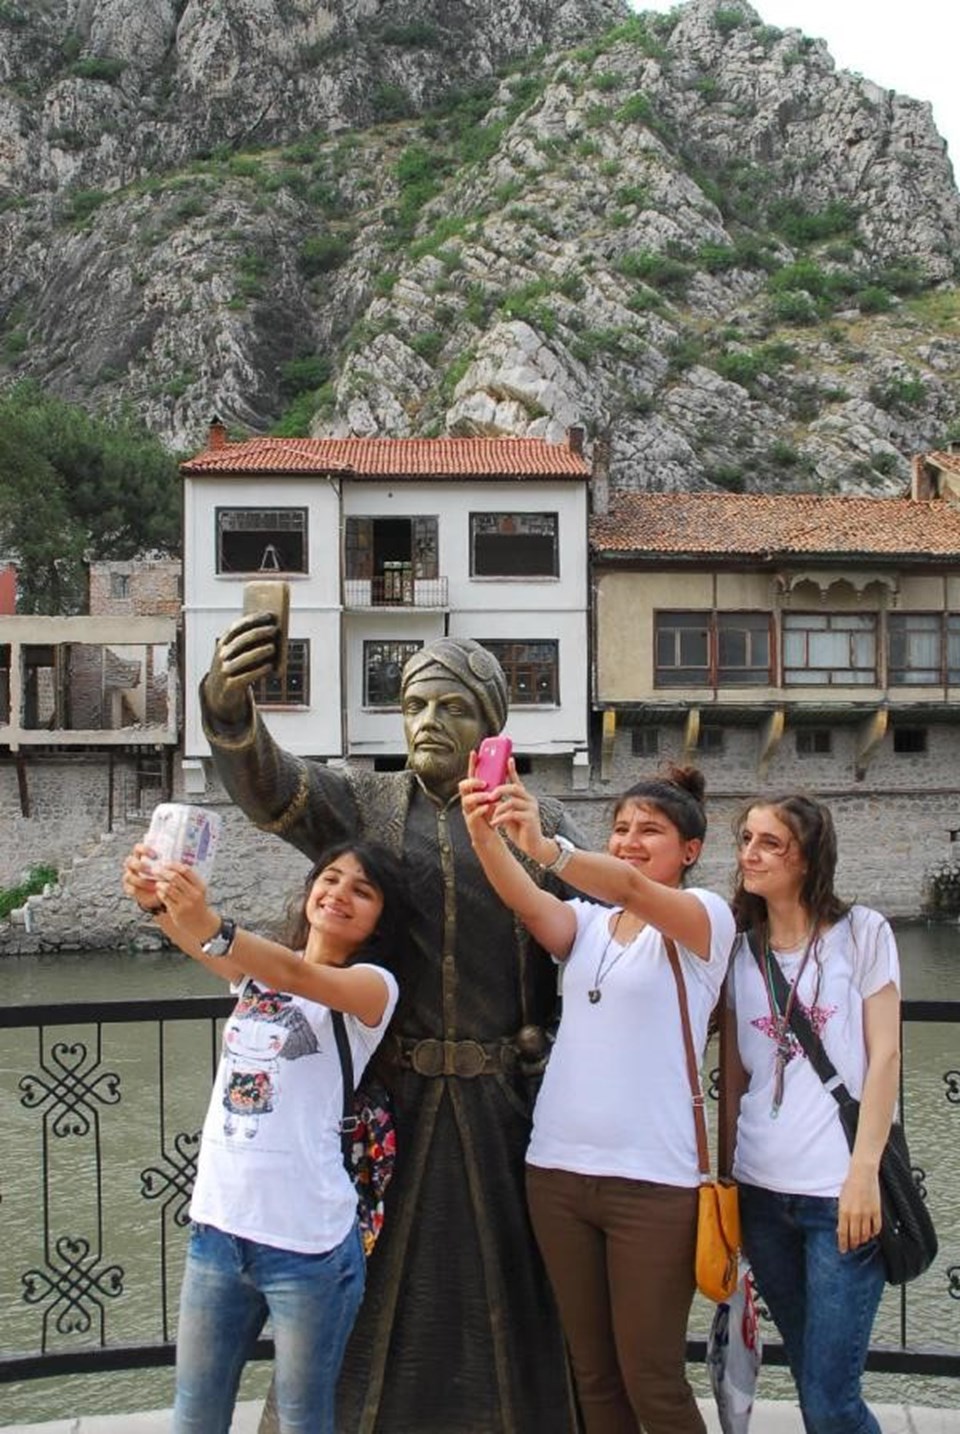 İki kez saldırıya uğradıktan sonra yenilenen 'selfie çeken şehzade' heykeline ilgi her geçen gün artıyor.
